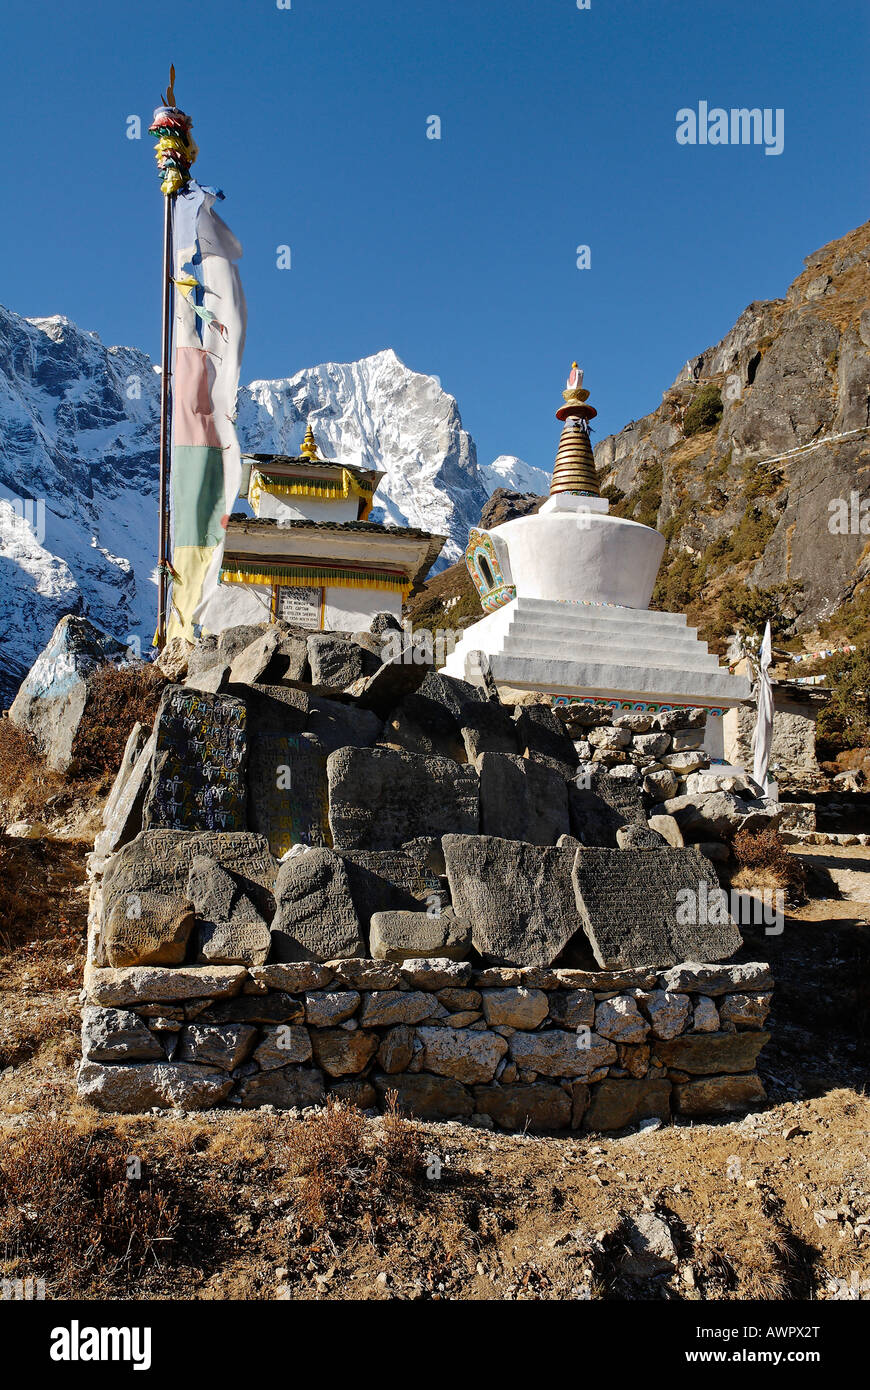 Historic stupa at Thame, Bhote Koshi valley, Khumbu Himal, Sagarmatha National Park, Nepal Stock Photo